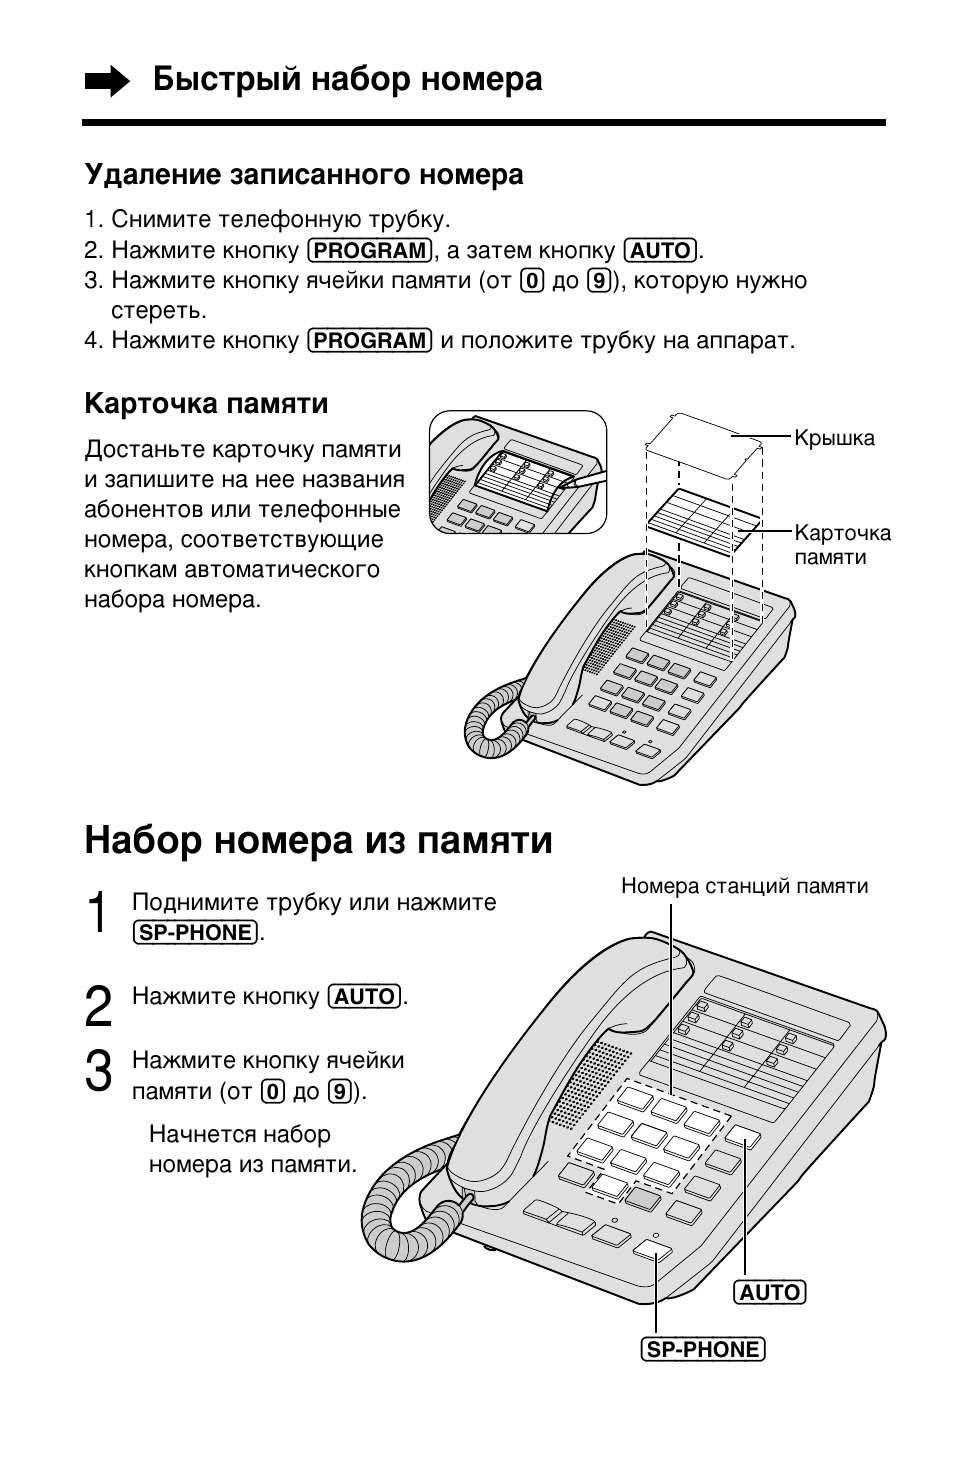 Как дать телеграмму по телефону с сотового телефона фото 22